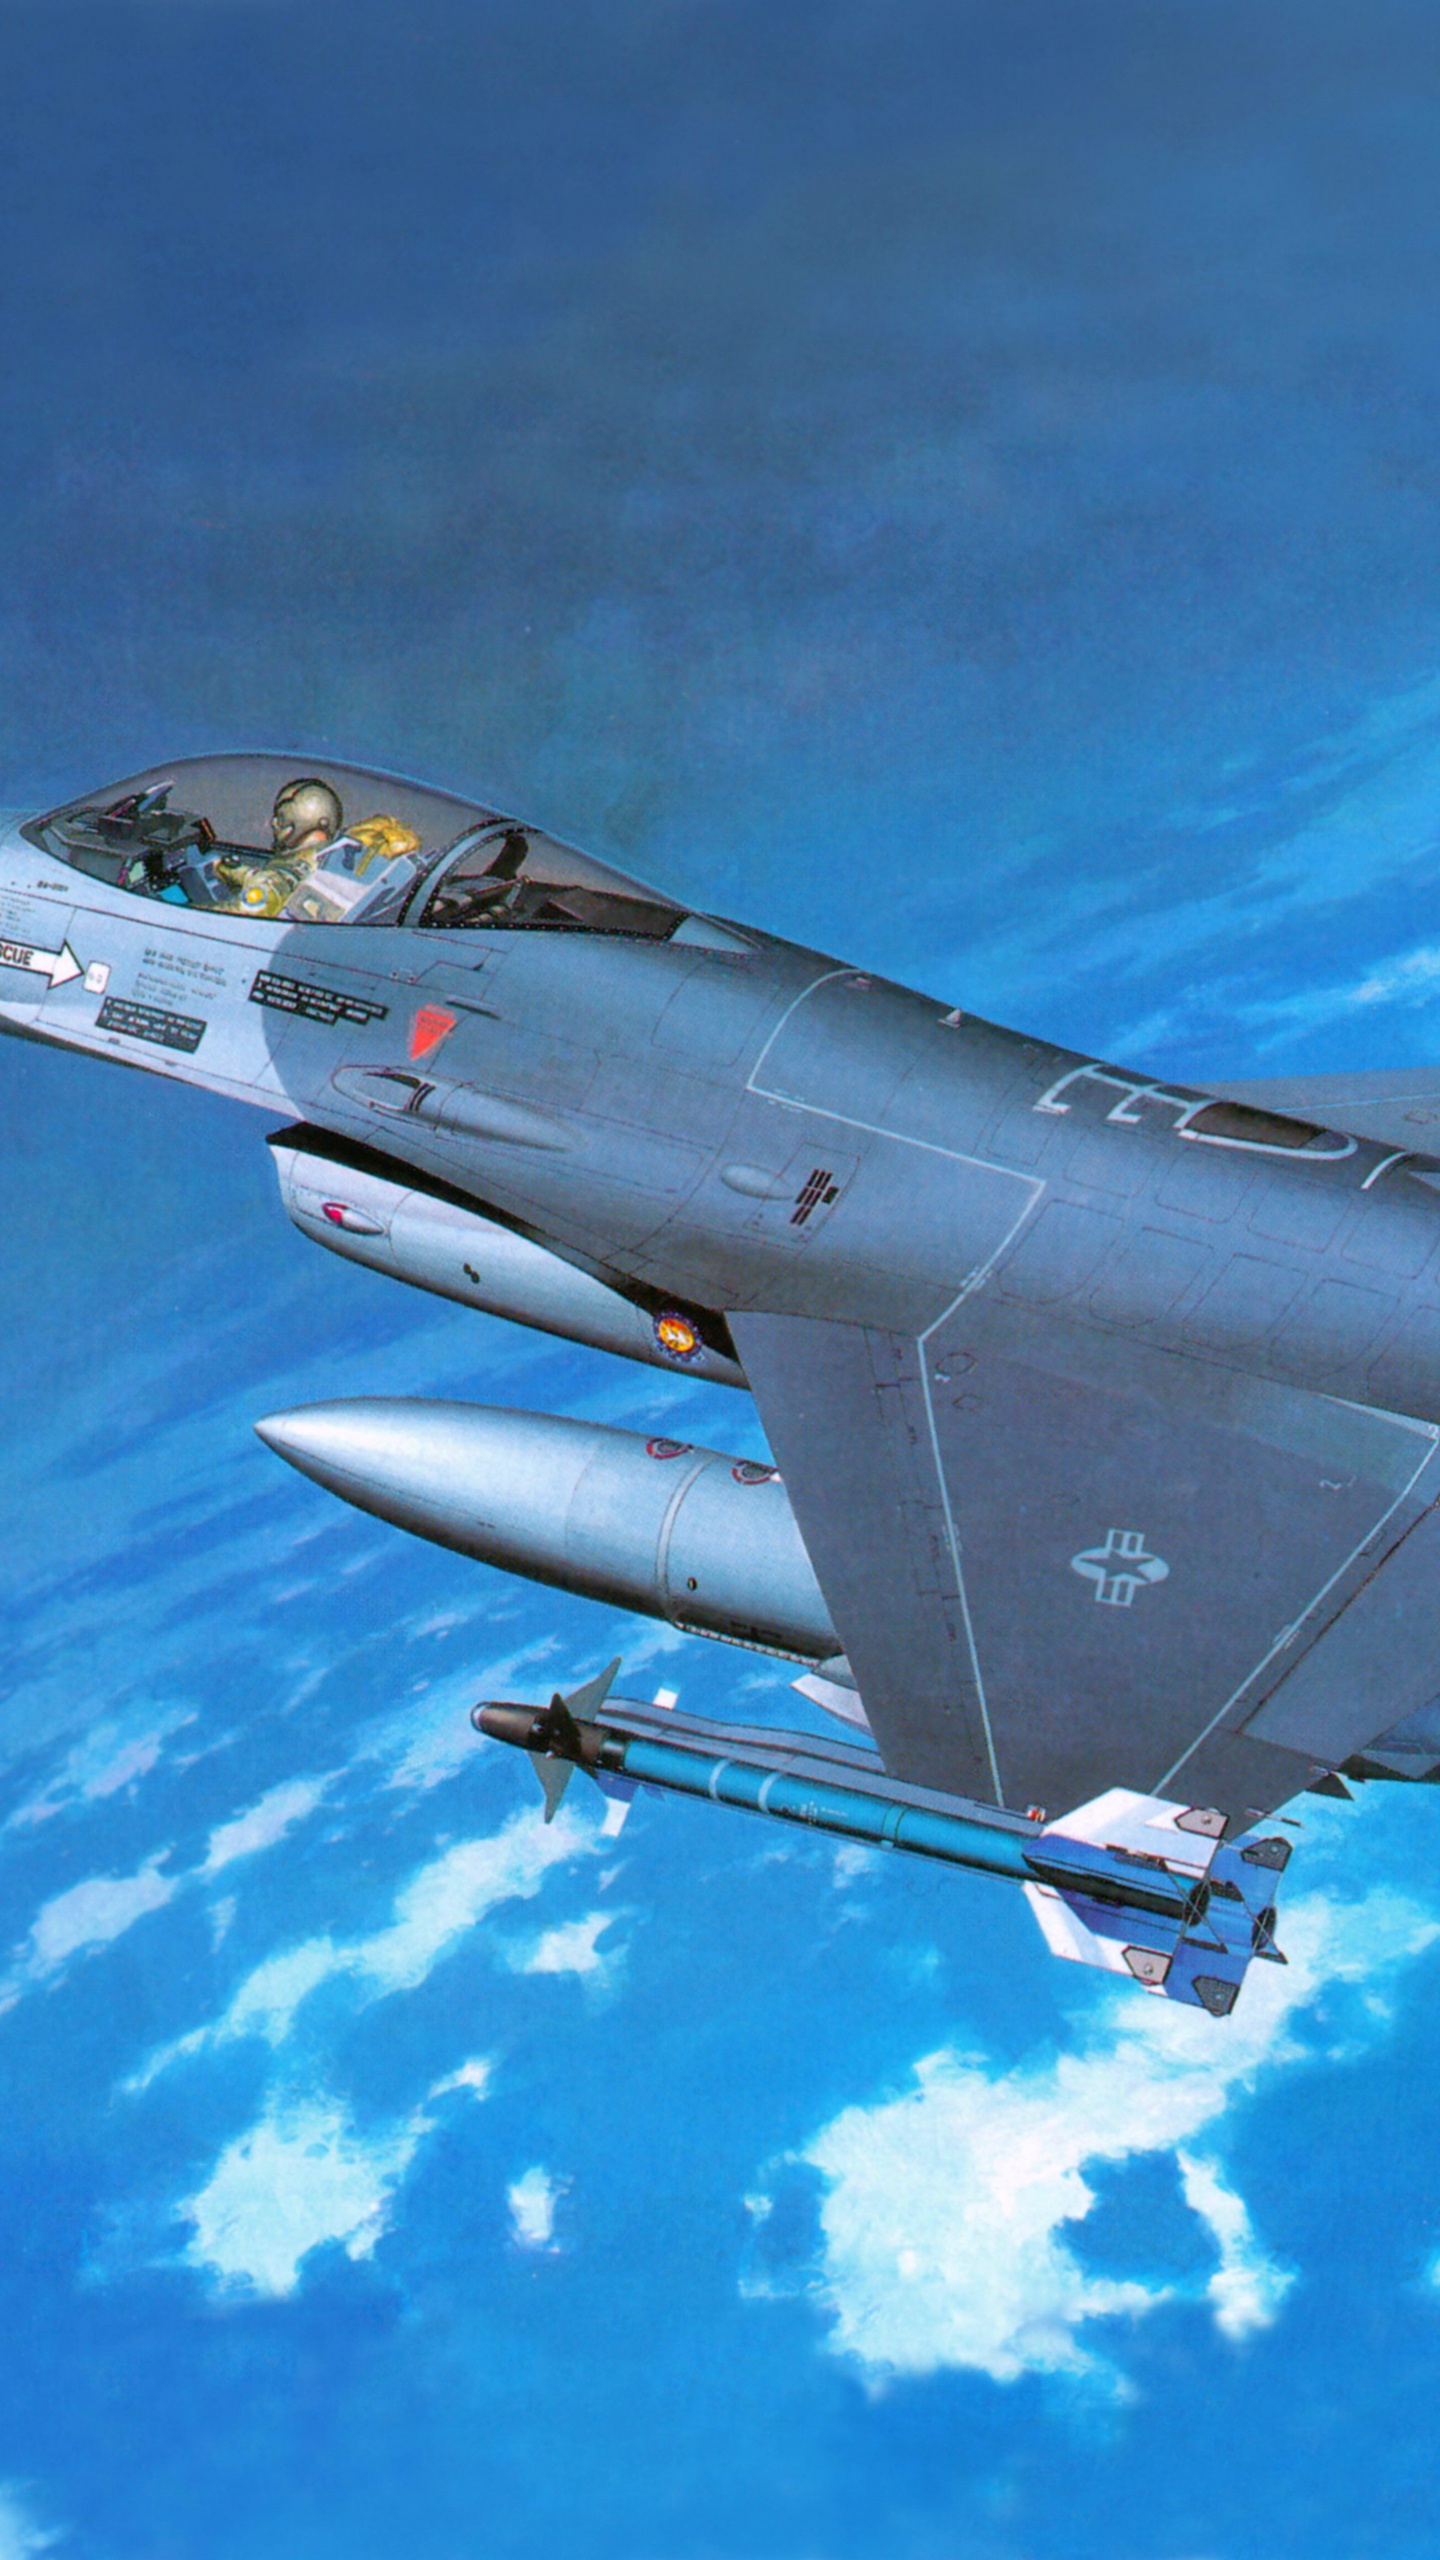 长谷川公司, 塑料模型, 军用飞机, 航空, 空军 壁纸 1440x2560 允许